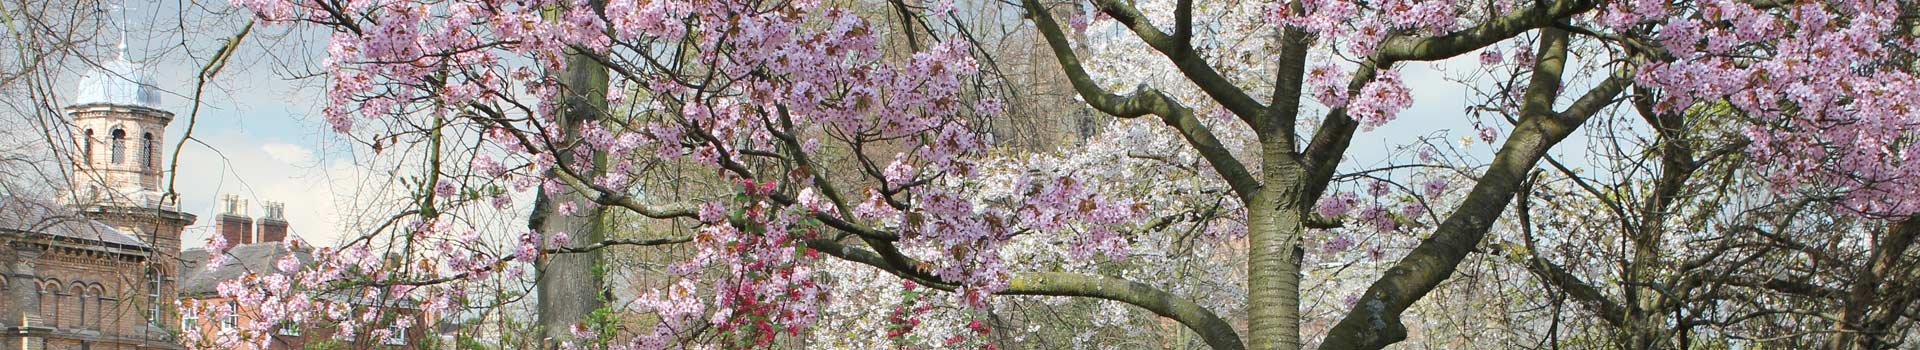 Beacon park blossom tree